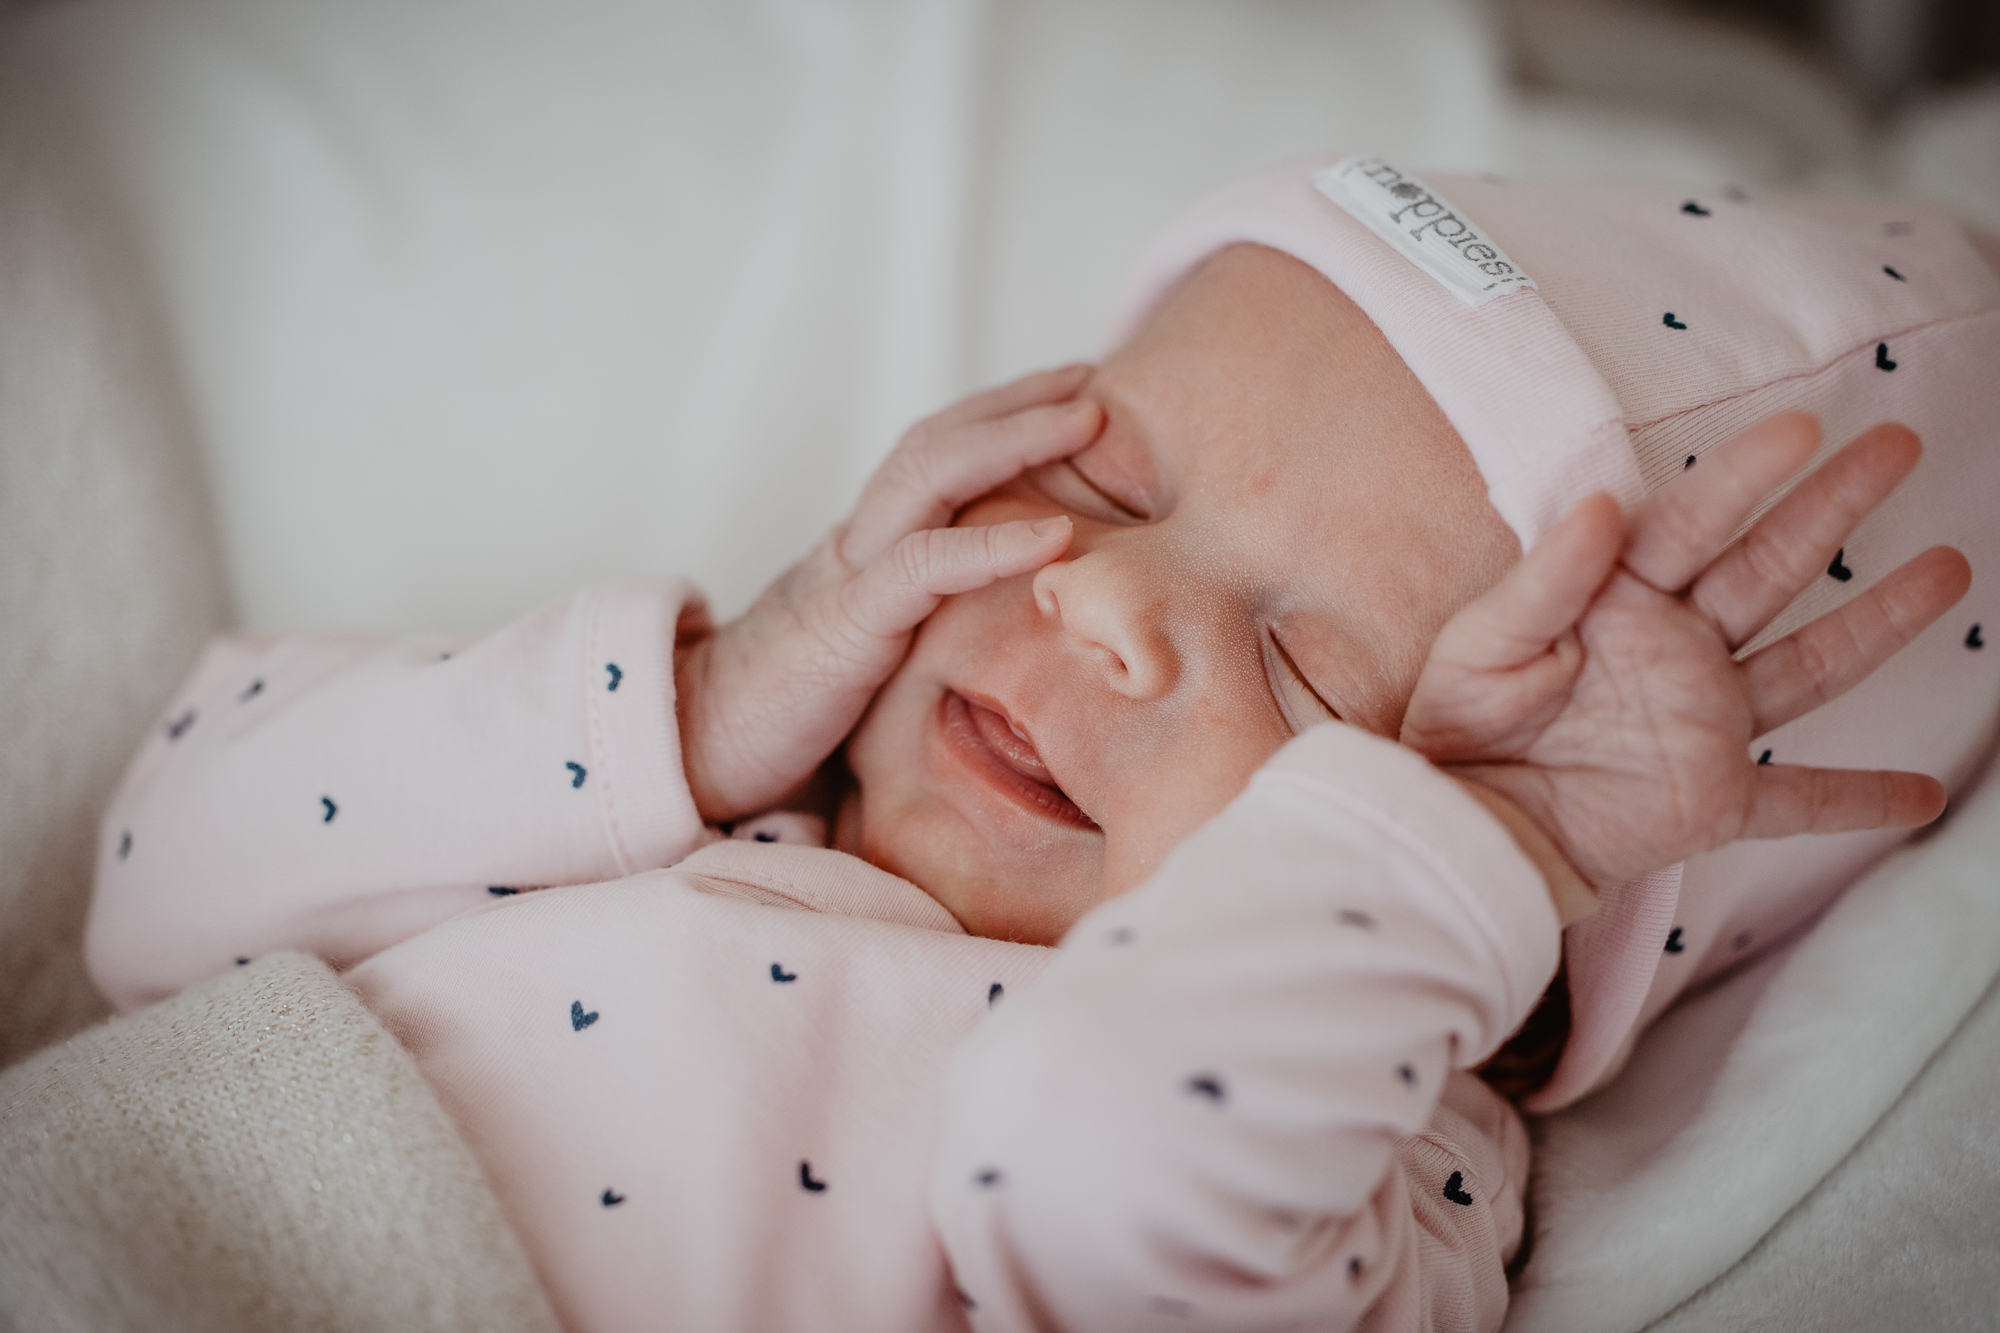 Babyshoot door newbornfotograaf Nickie Fotografie uit Dokkum, Friesland.